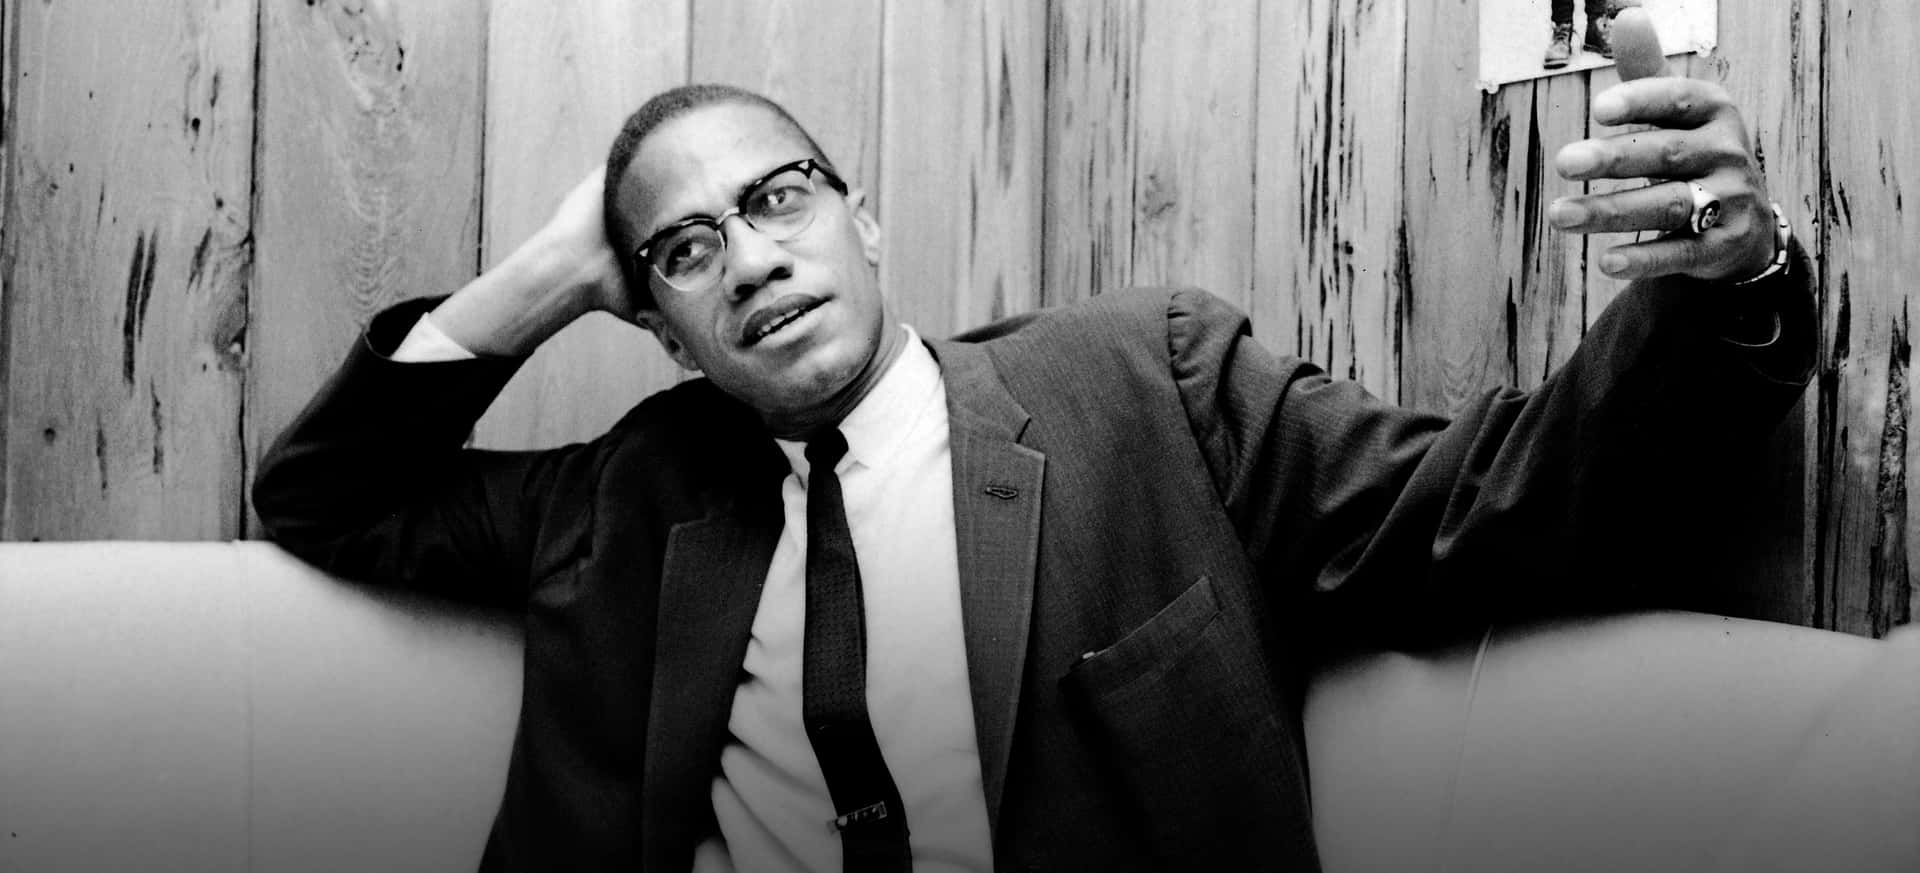 Malcolm X Contemplative Moment Wallpaper